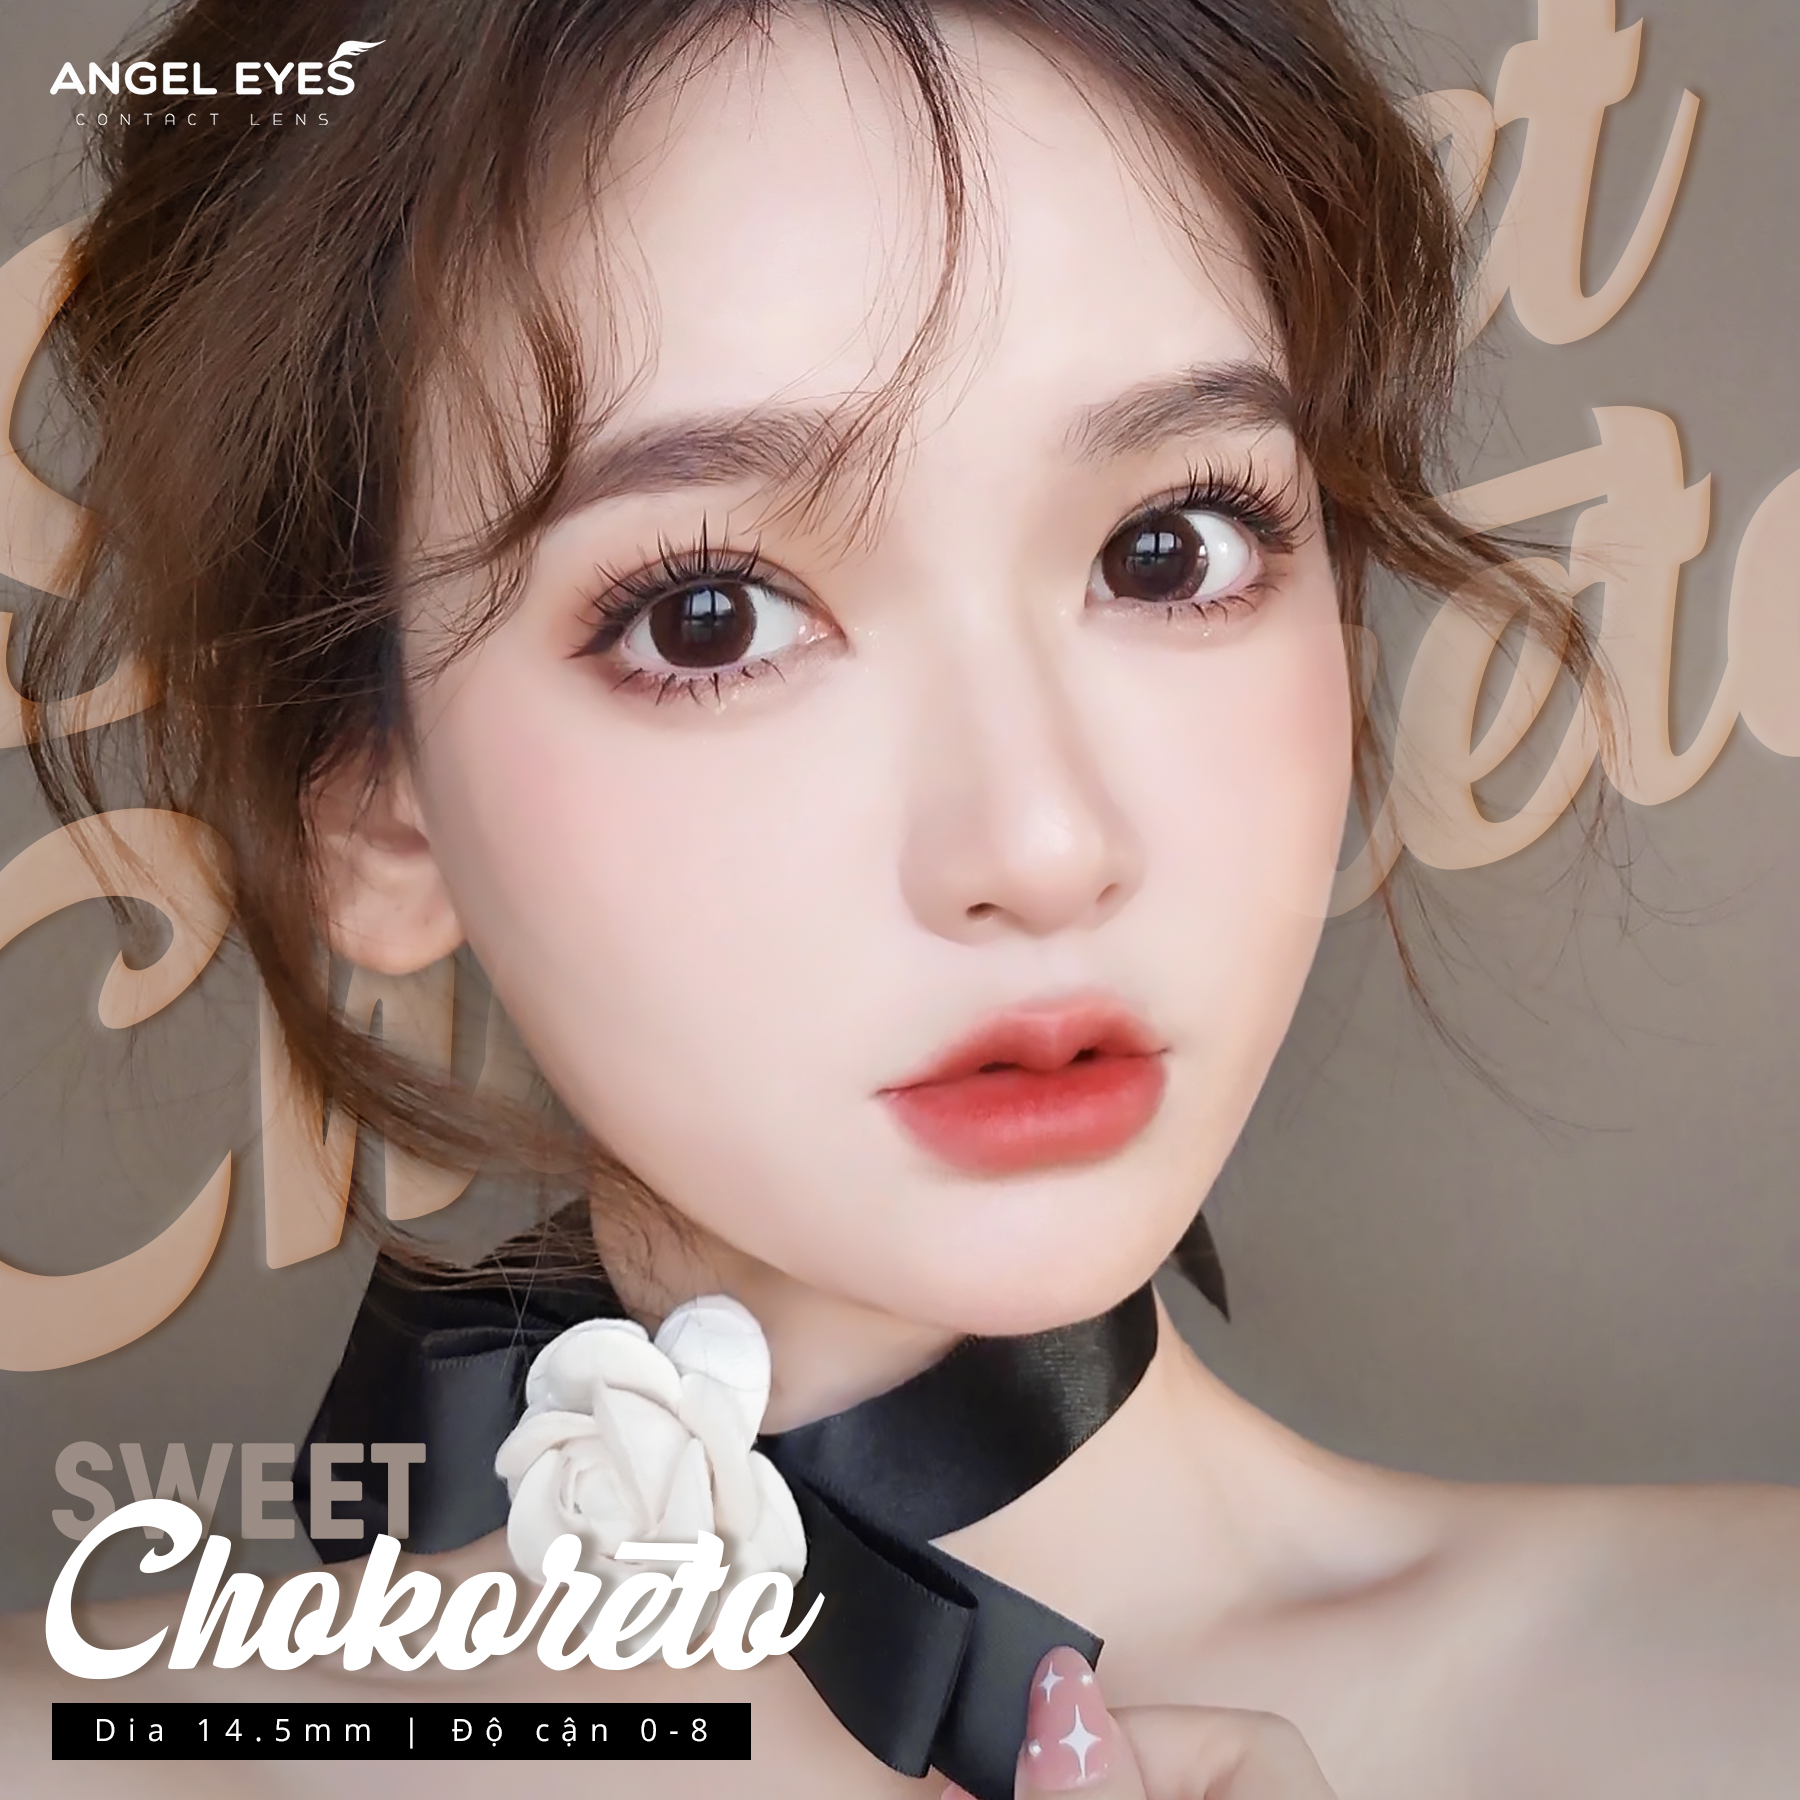 Kính giãn tròng màu Choco hiệu Angel Eyes  Chokoreto có độ - Chất liệu Silicone Hydrogel độ giãn 14.5